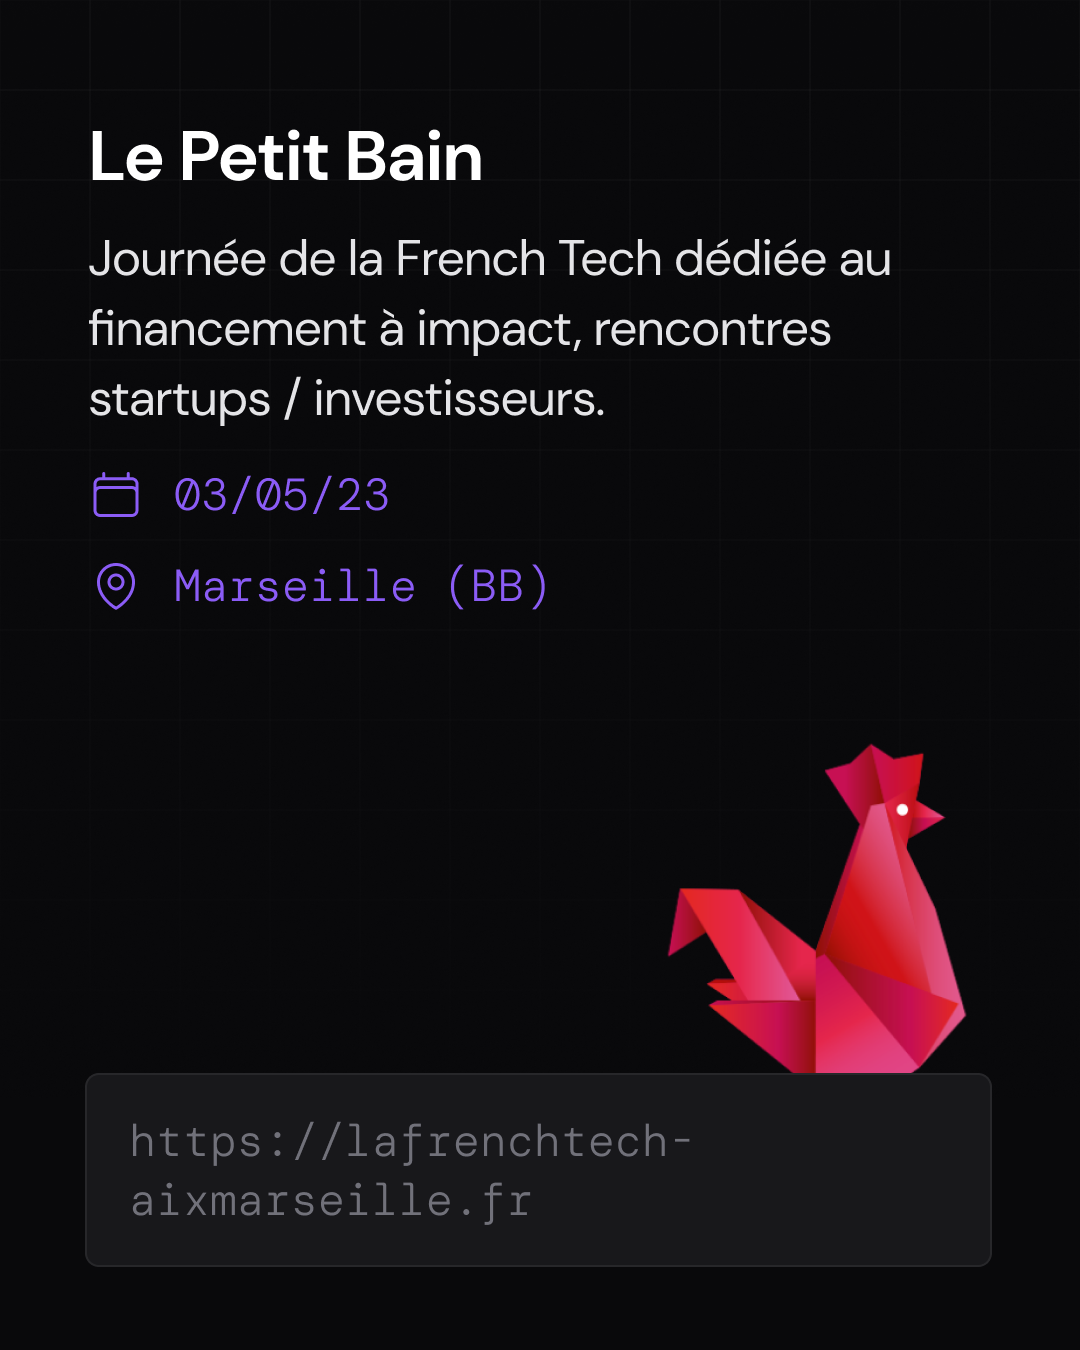 Le Petit Bain journée de la french tech aix marseille Mai 2023